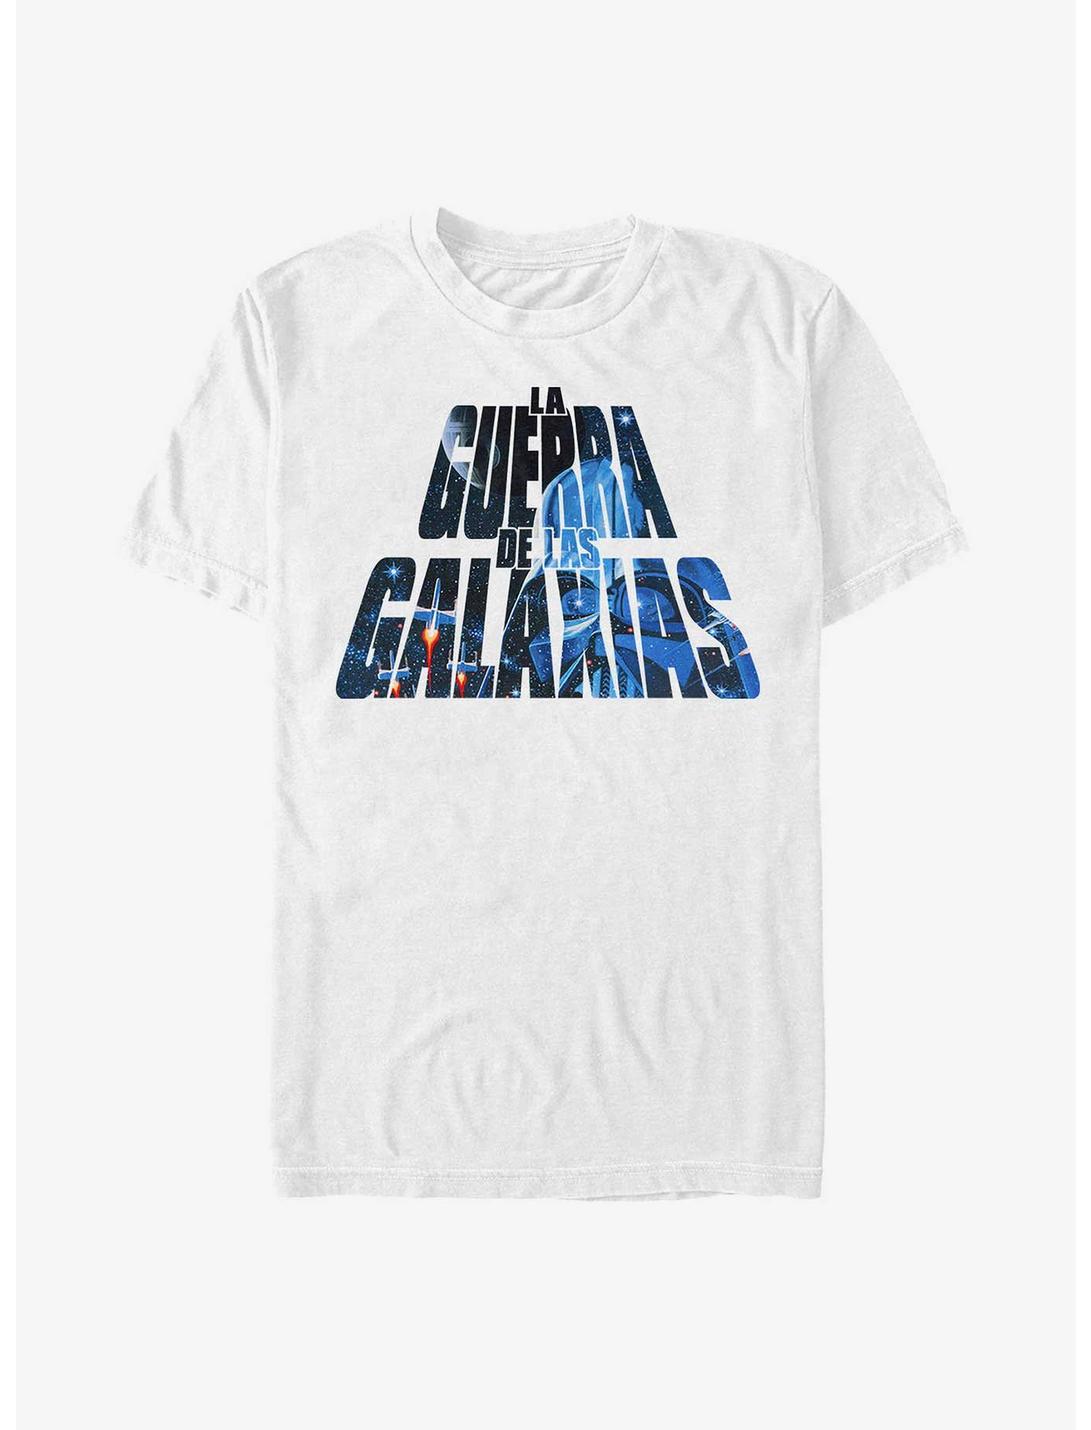 Star Wars Las Galaxias T-Shirt, WHITE, hi-res